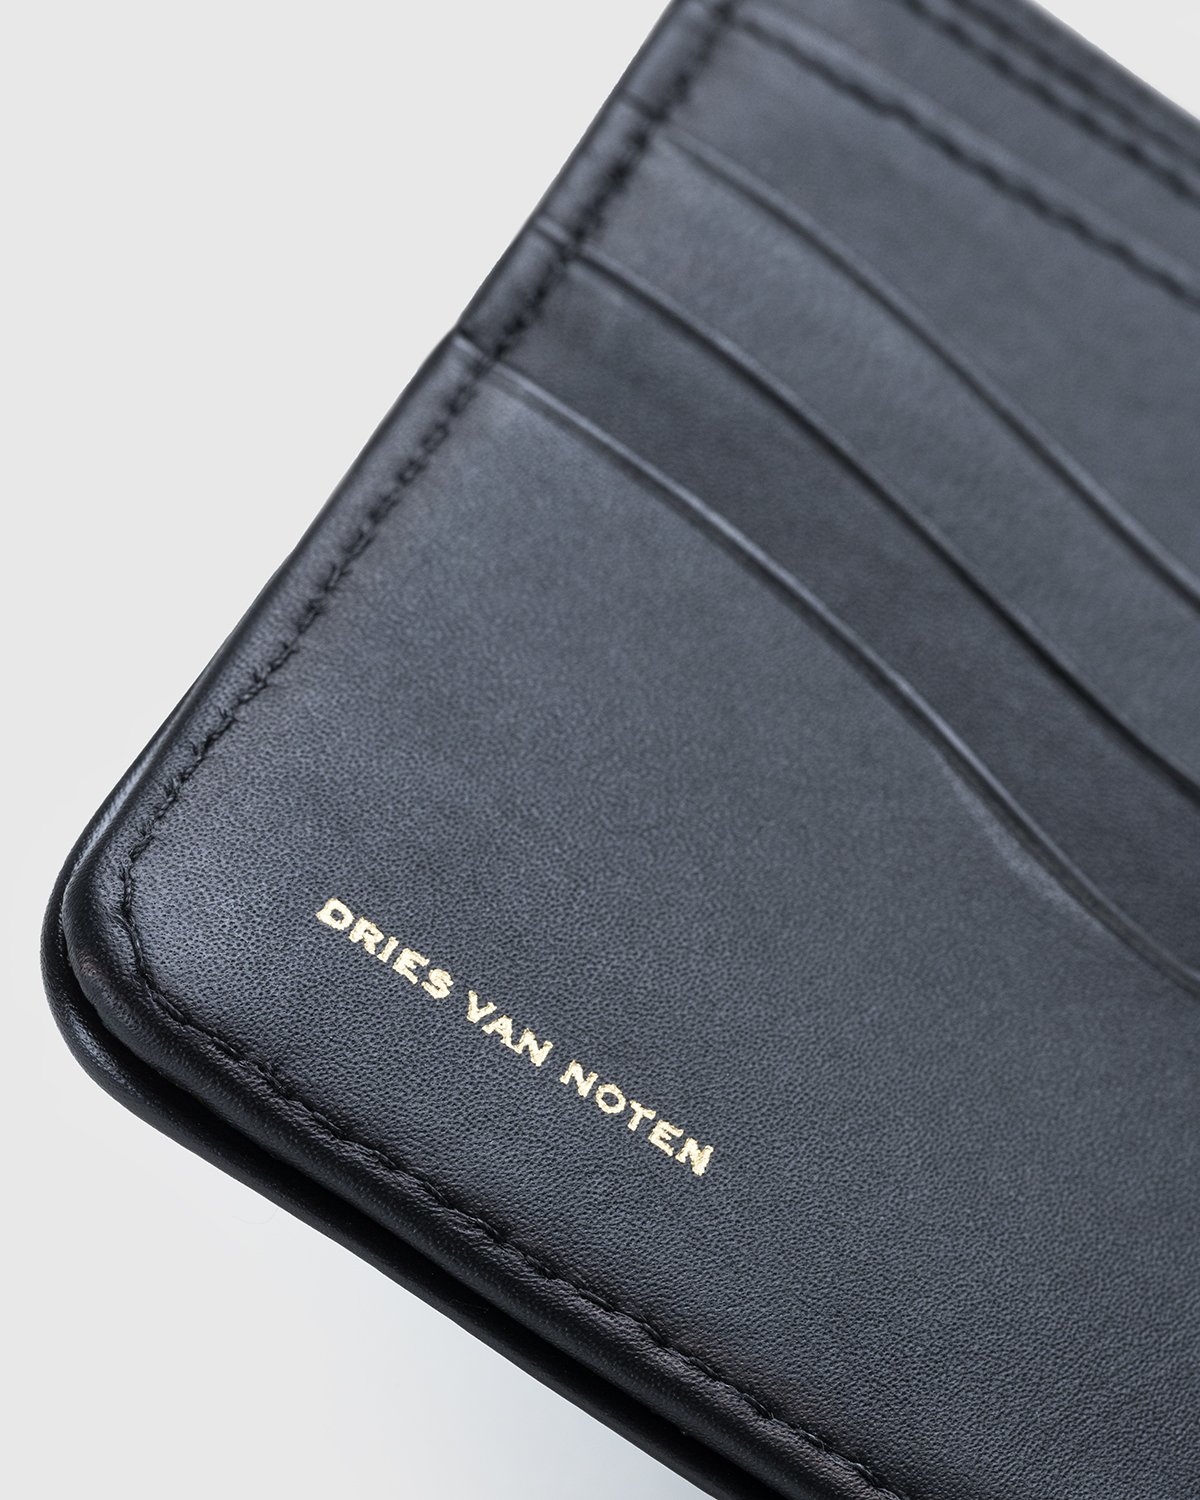 Dries van Noten - Leather Wallet Black - Accessories - Black - Image 4